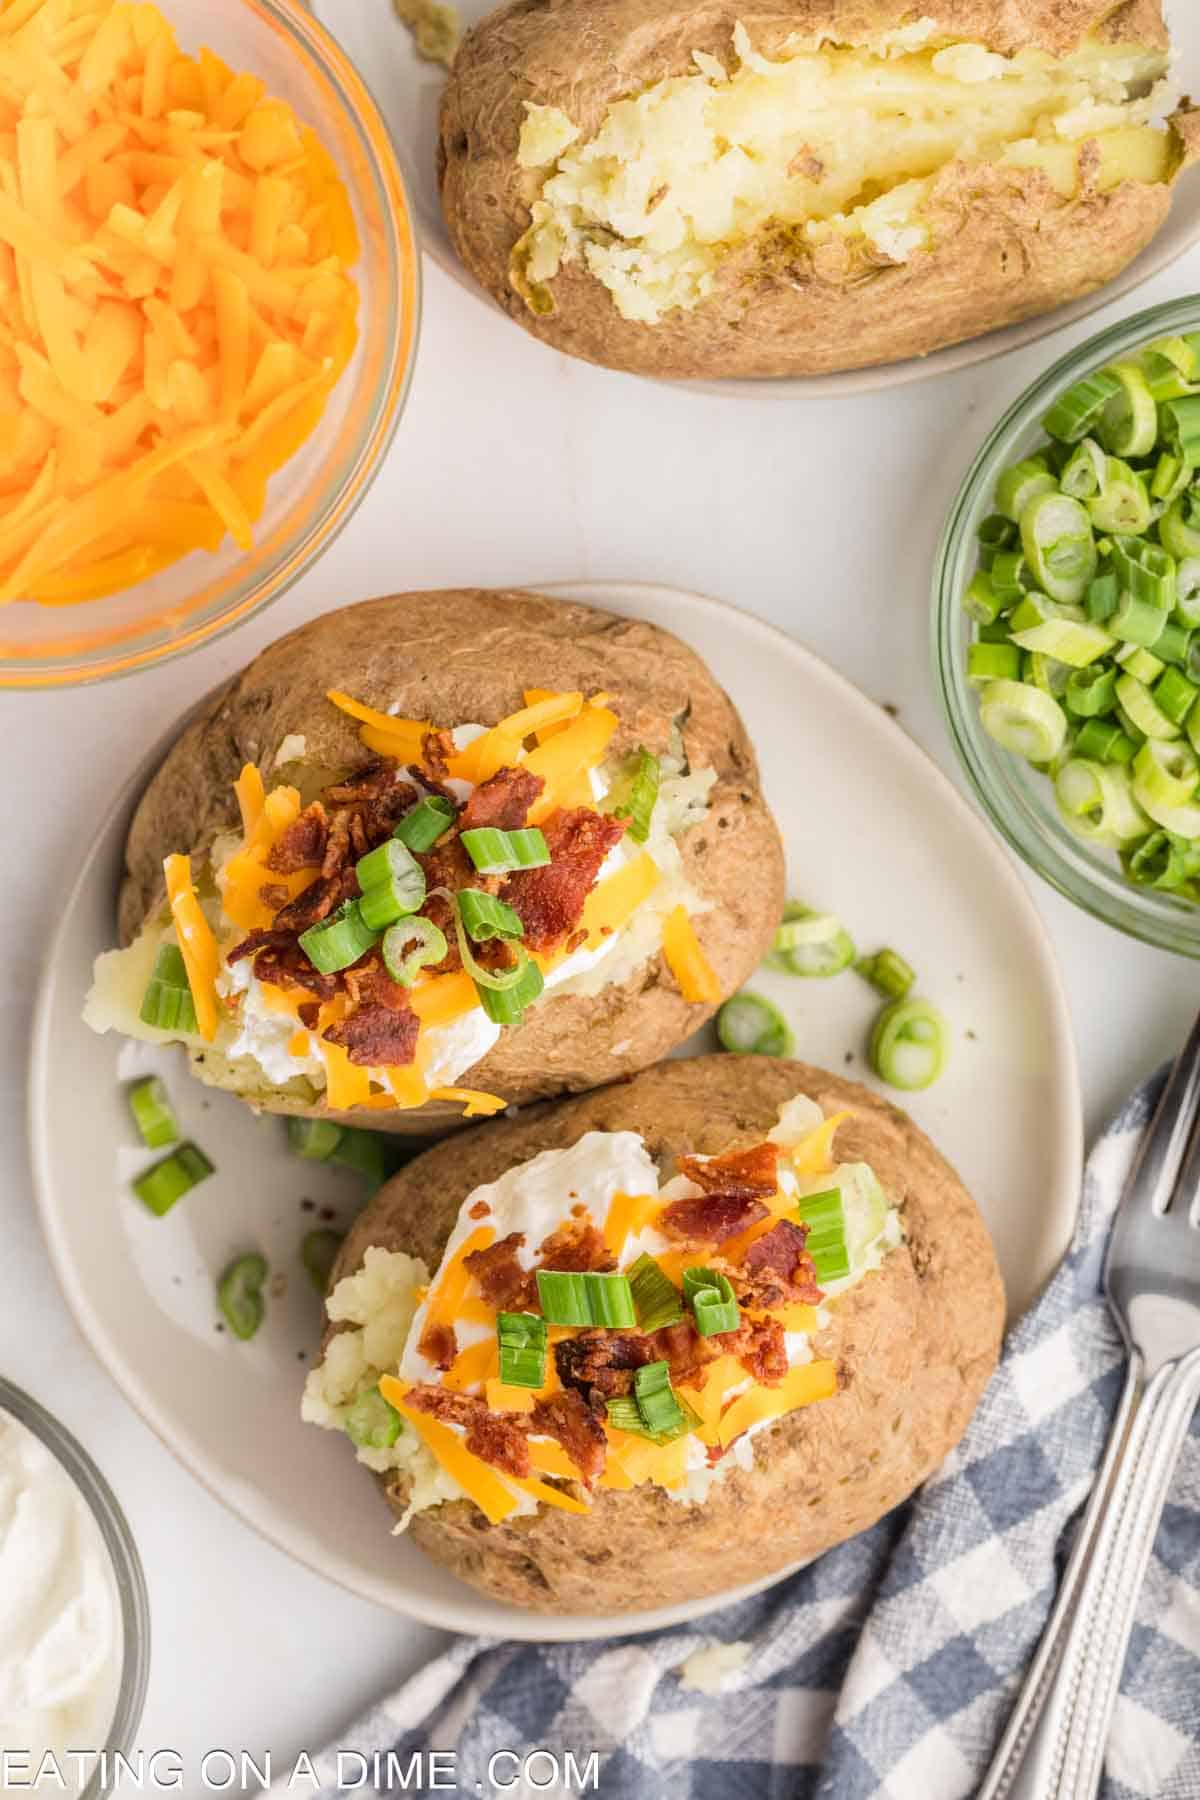 https://www.eatingonadime.com/wp-content/uploads/2023/04/Baked-Potatoes-in-the-Microwave-26-of-27.jpg